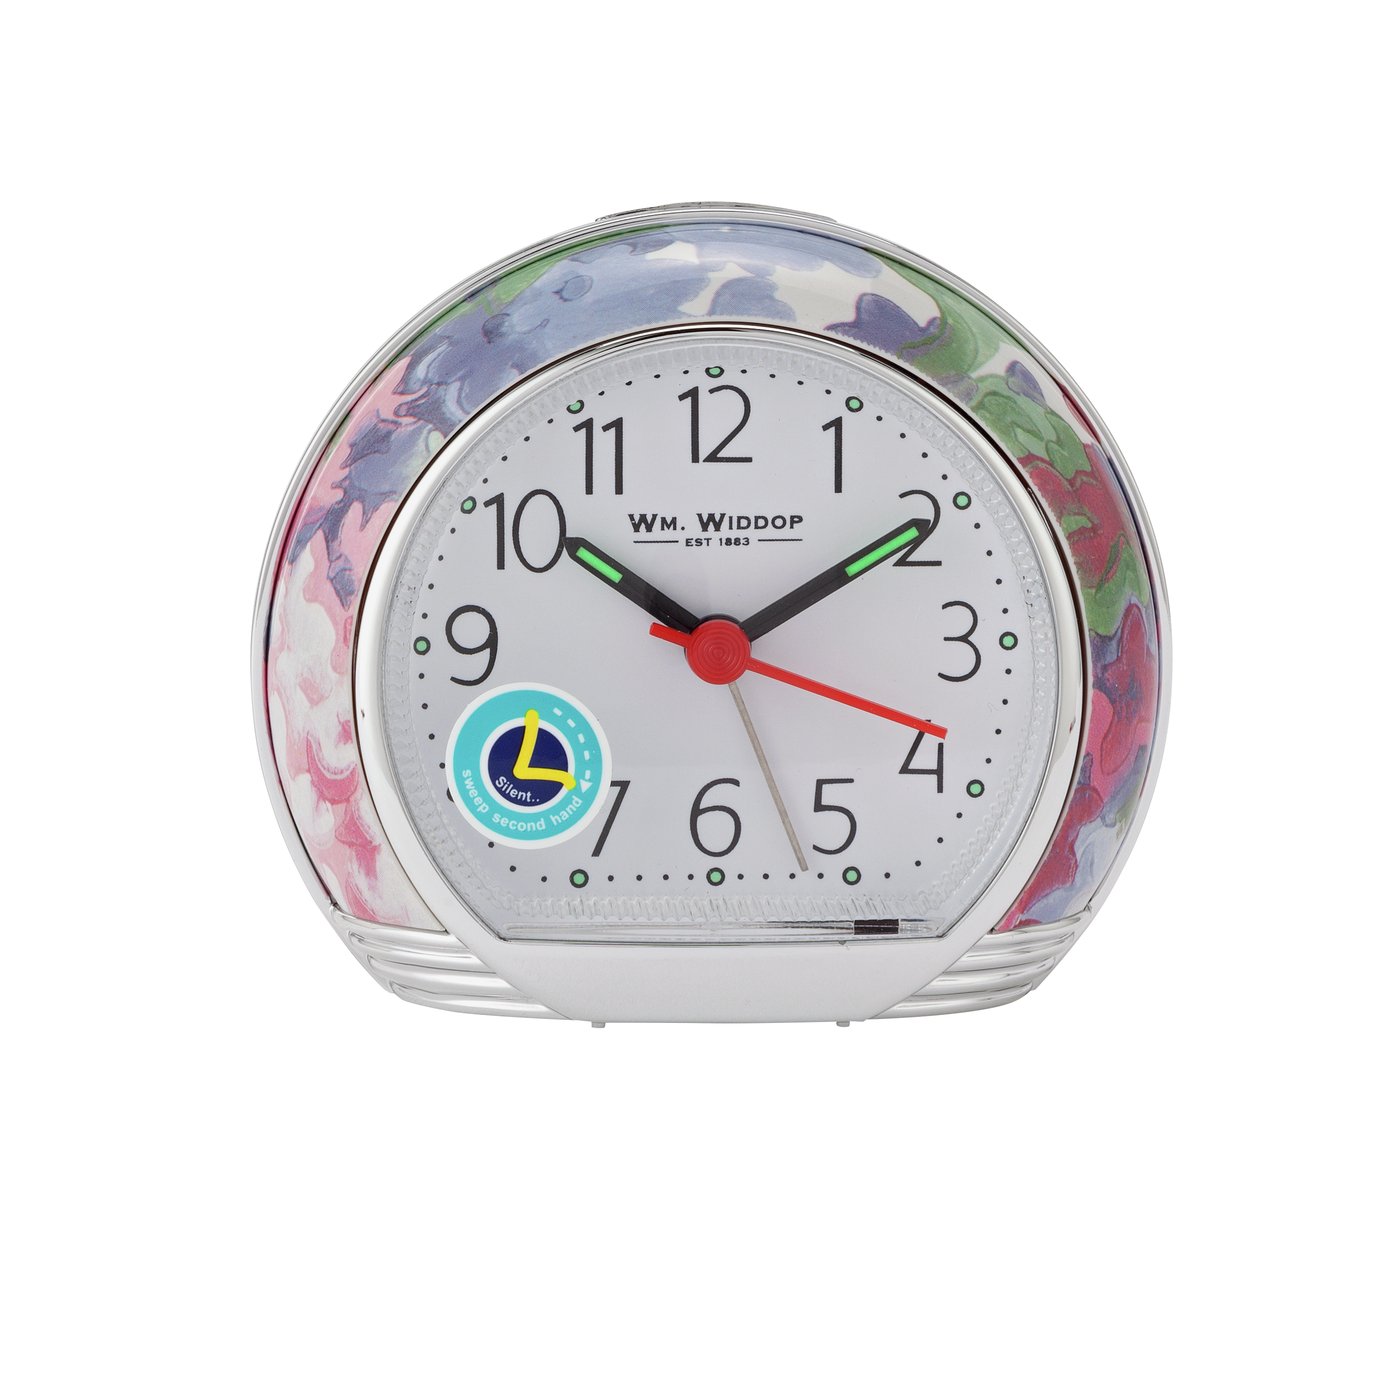 Wm. Widdop Leaf Design Alarm Clock